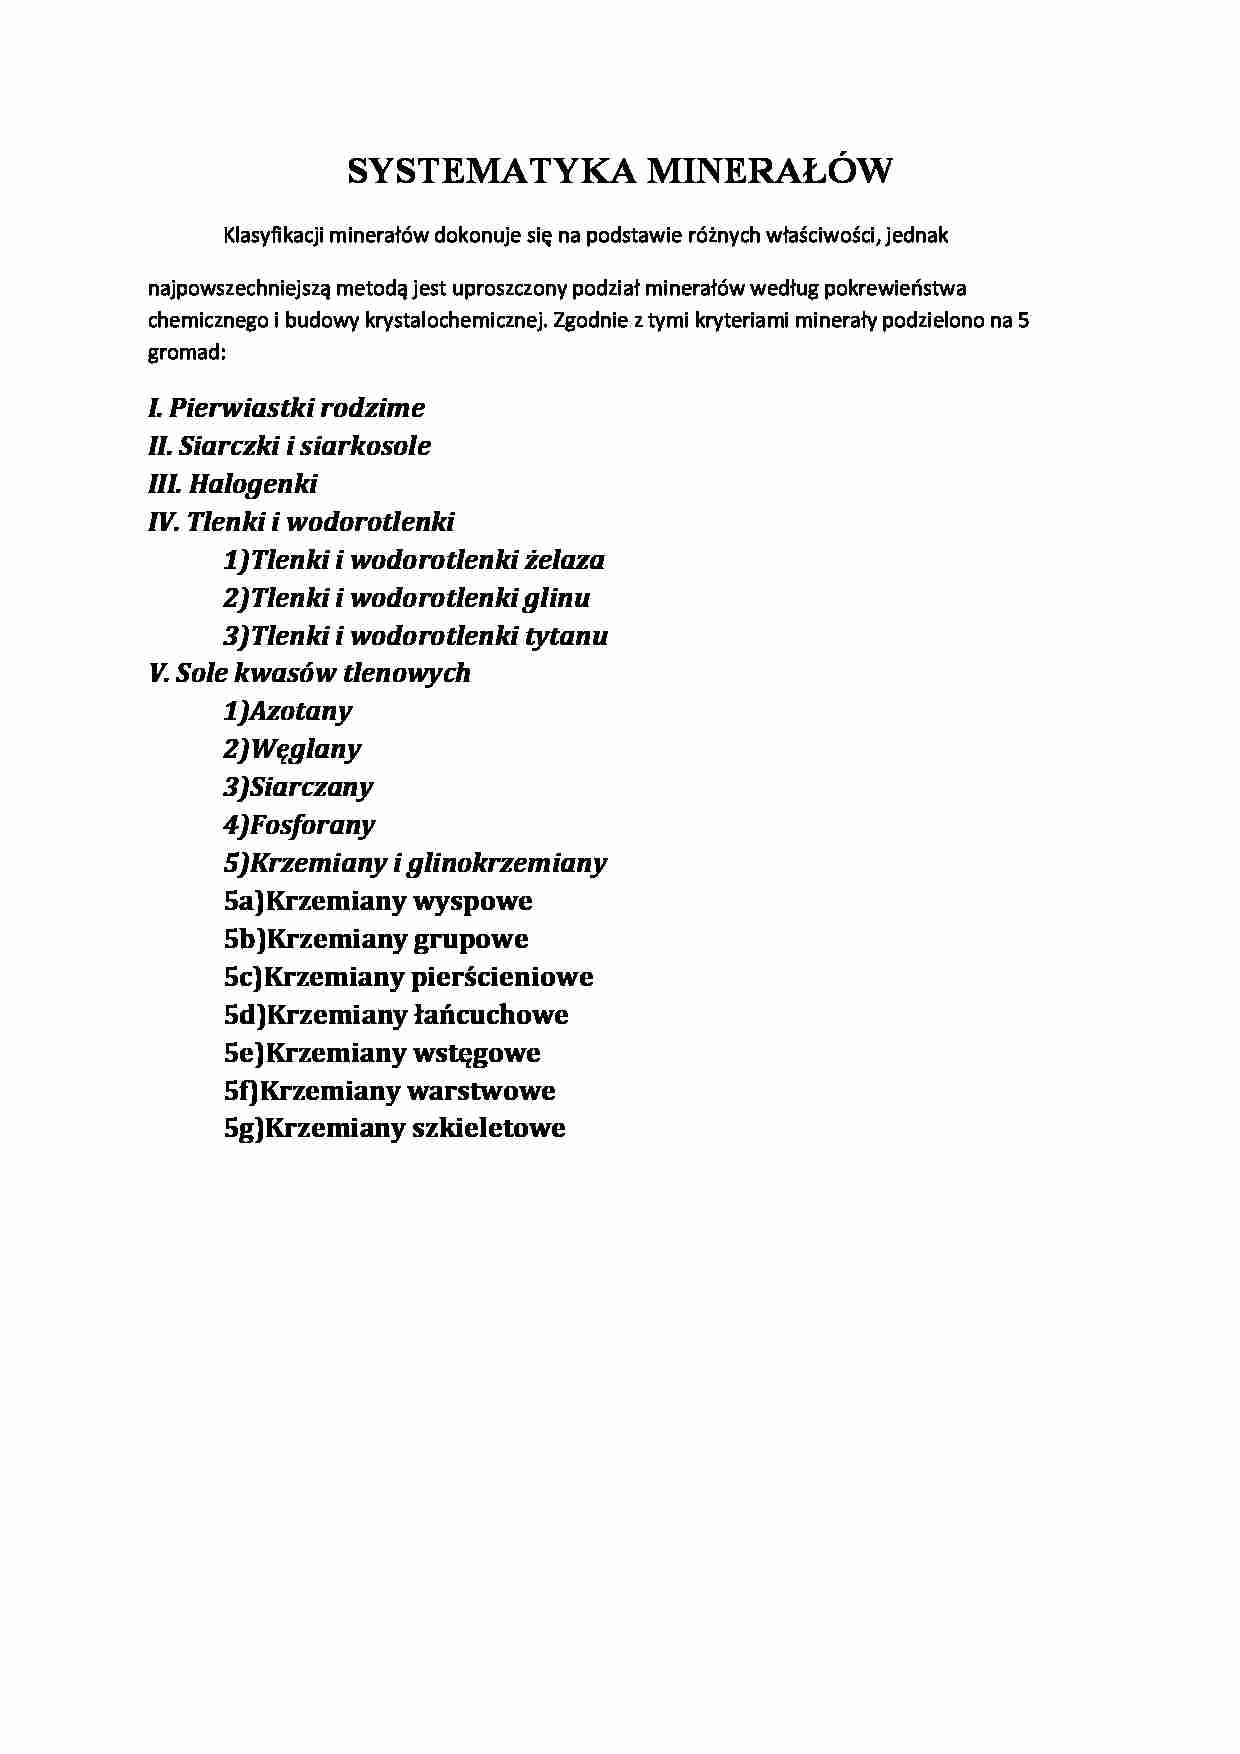 Systematyka minerałów - strona 1